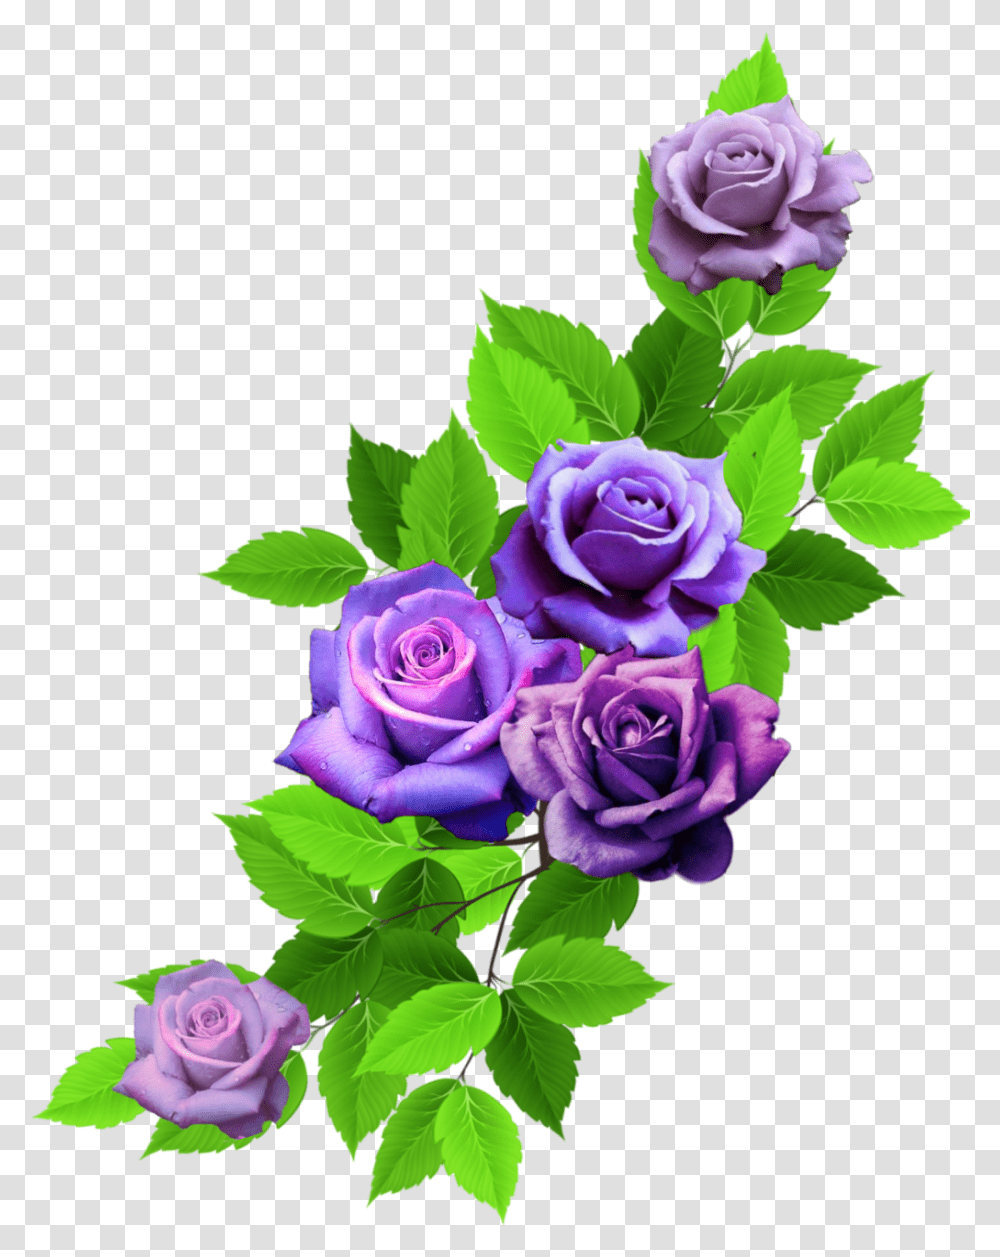 Rose Roses Nature Leaves Rainbow Rainbowflowers Floribunda, Plant, Blossom, Flower Bouquet, Flower Arrangement Transparent Png